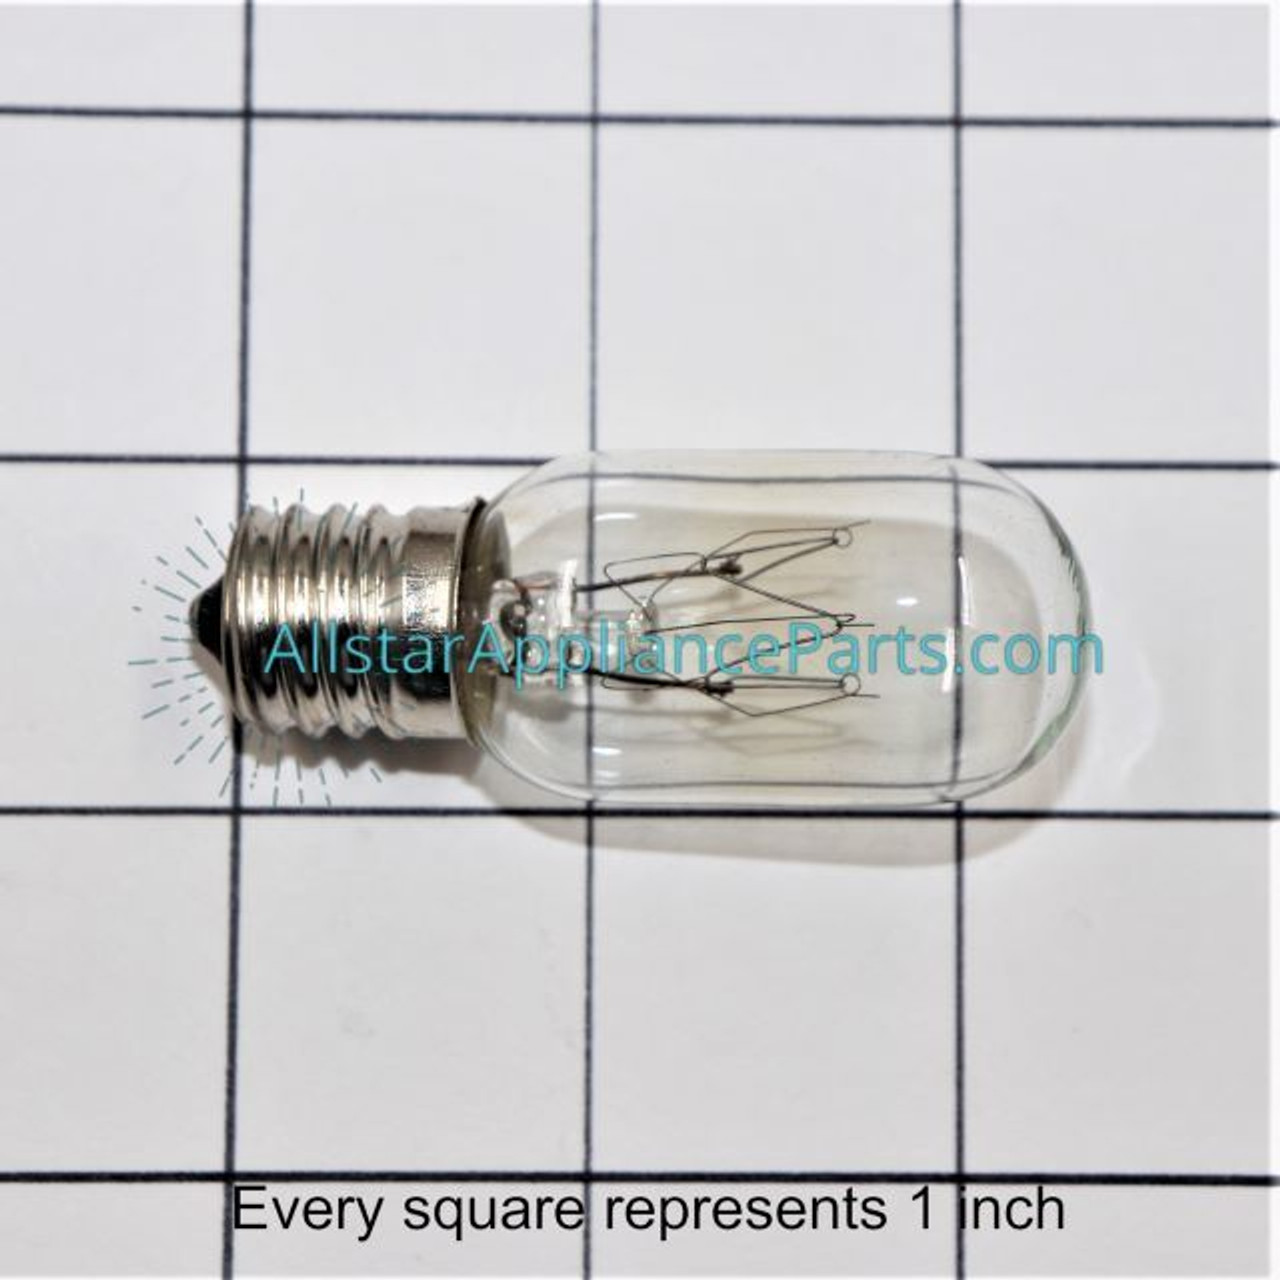 4713-001013 Microwave Light Bulb